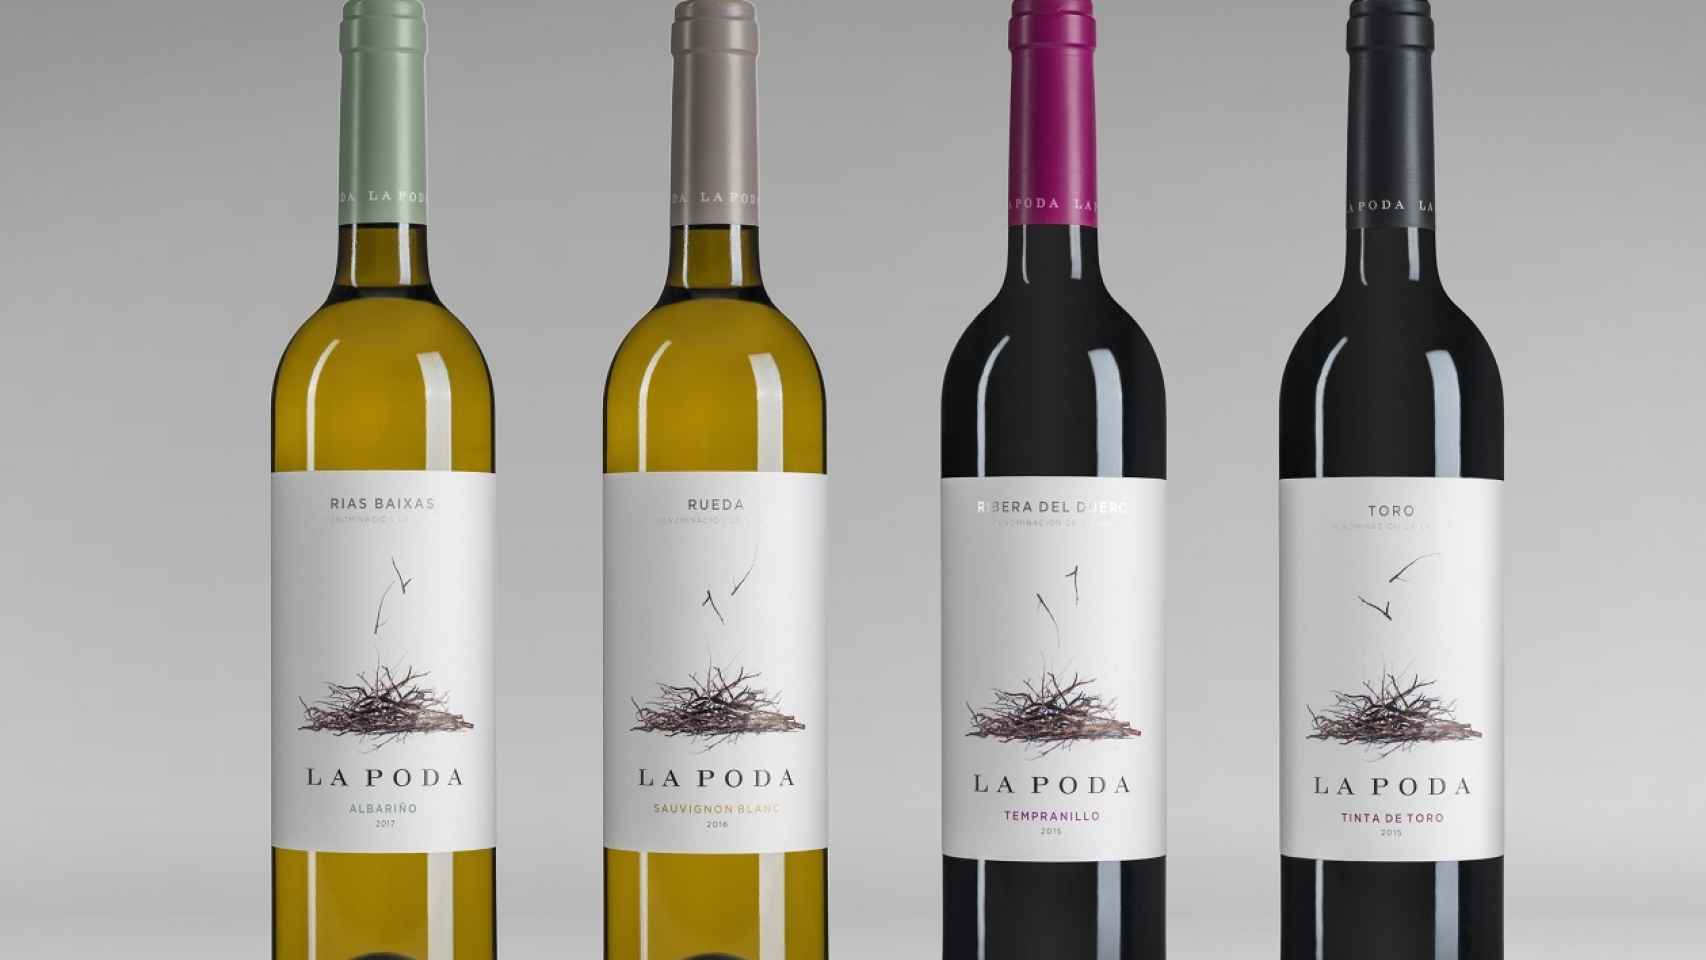 Colección de vinos gastronómicos La Poda.